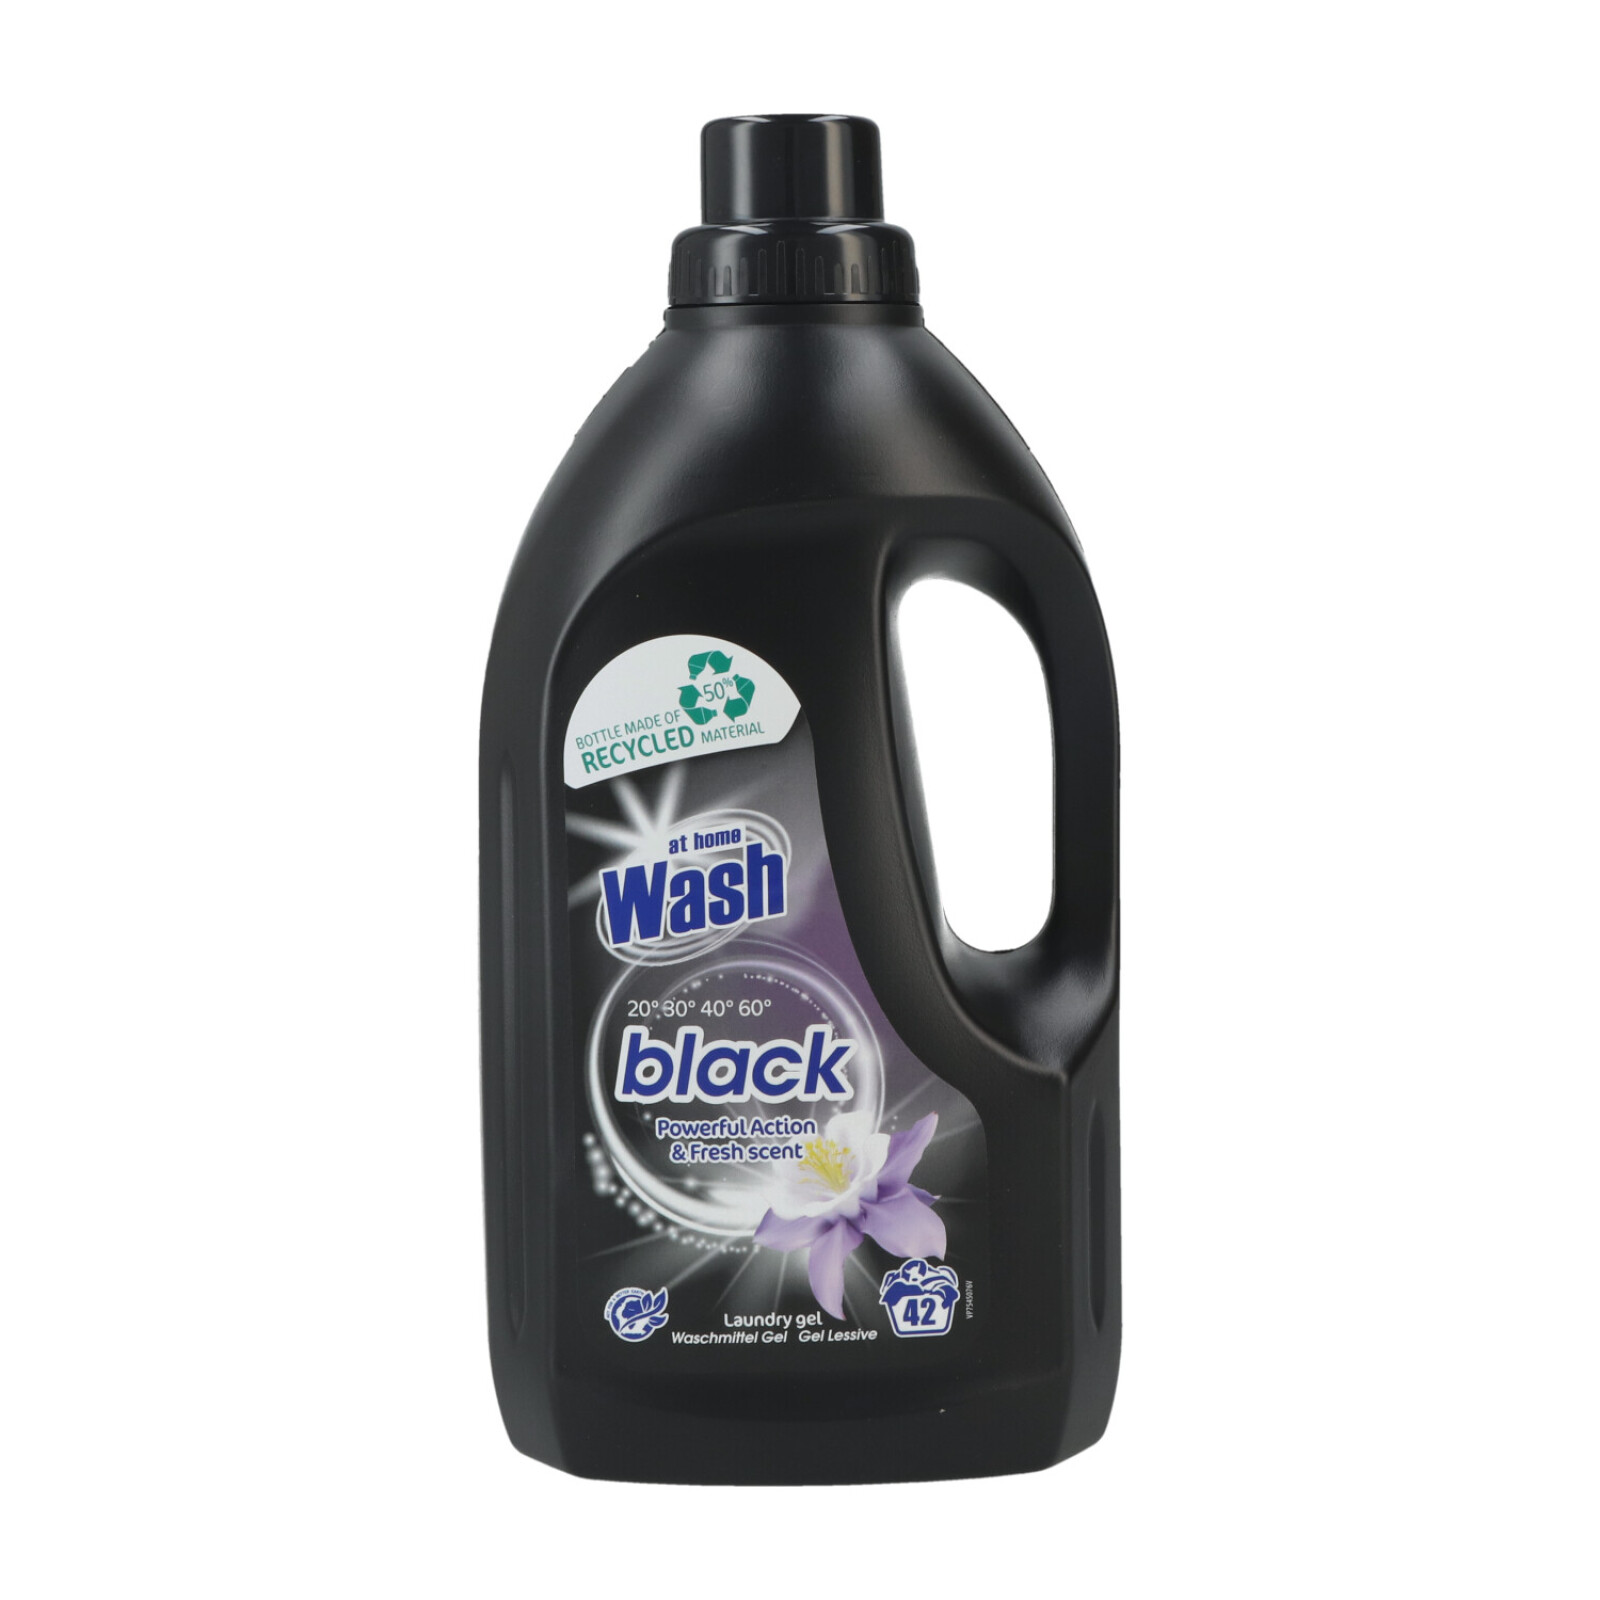 At Home Wash Flüssigwaschmittel GEL! 1.5ltr Black 42WL